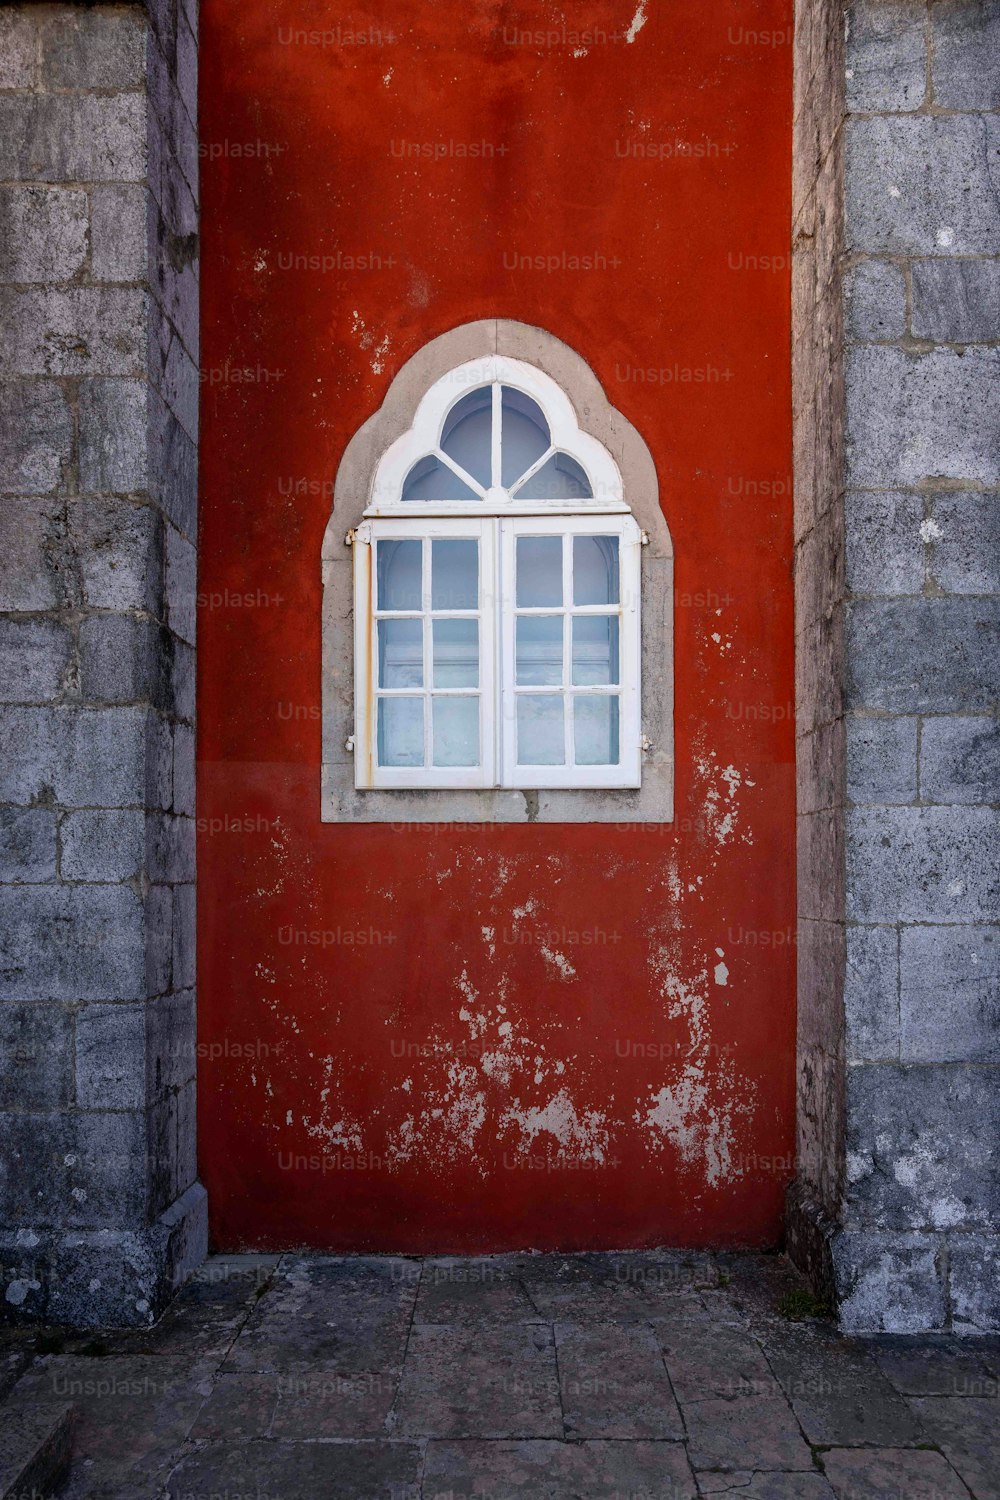 Marcos de ventanas chambranle stock photography vidrio, ventana, mueble,  edificio, ventana png